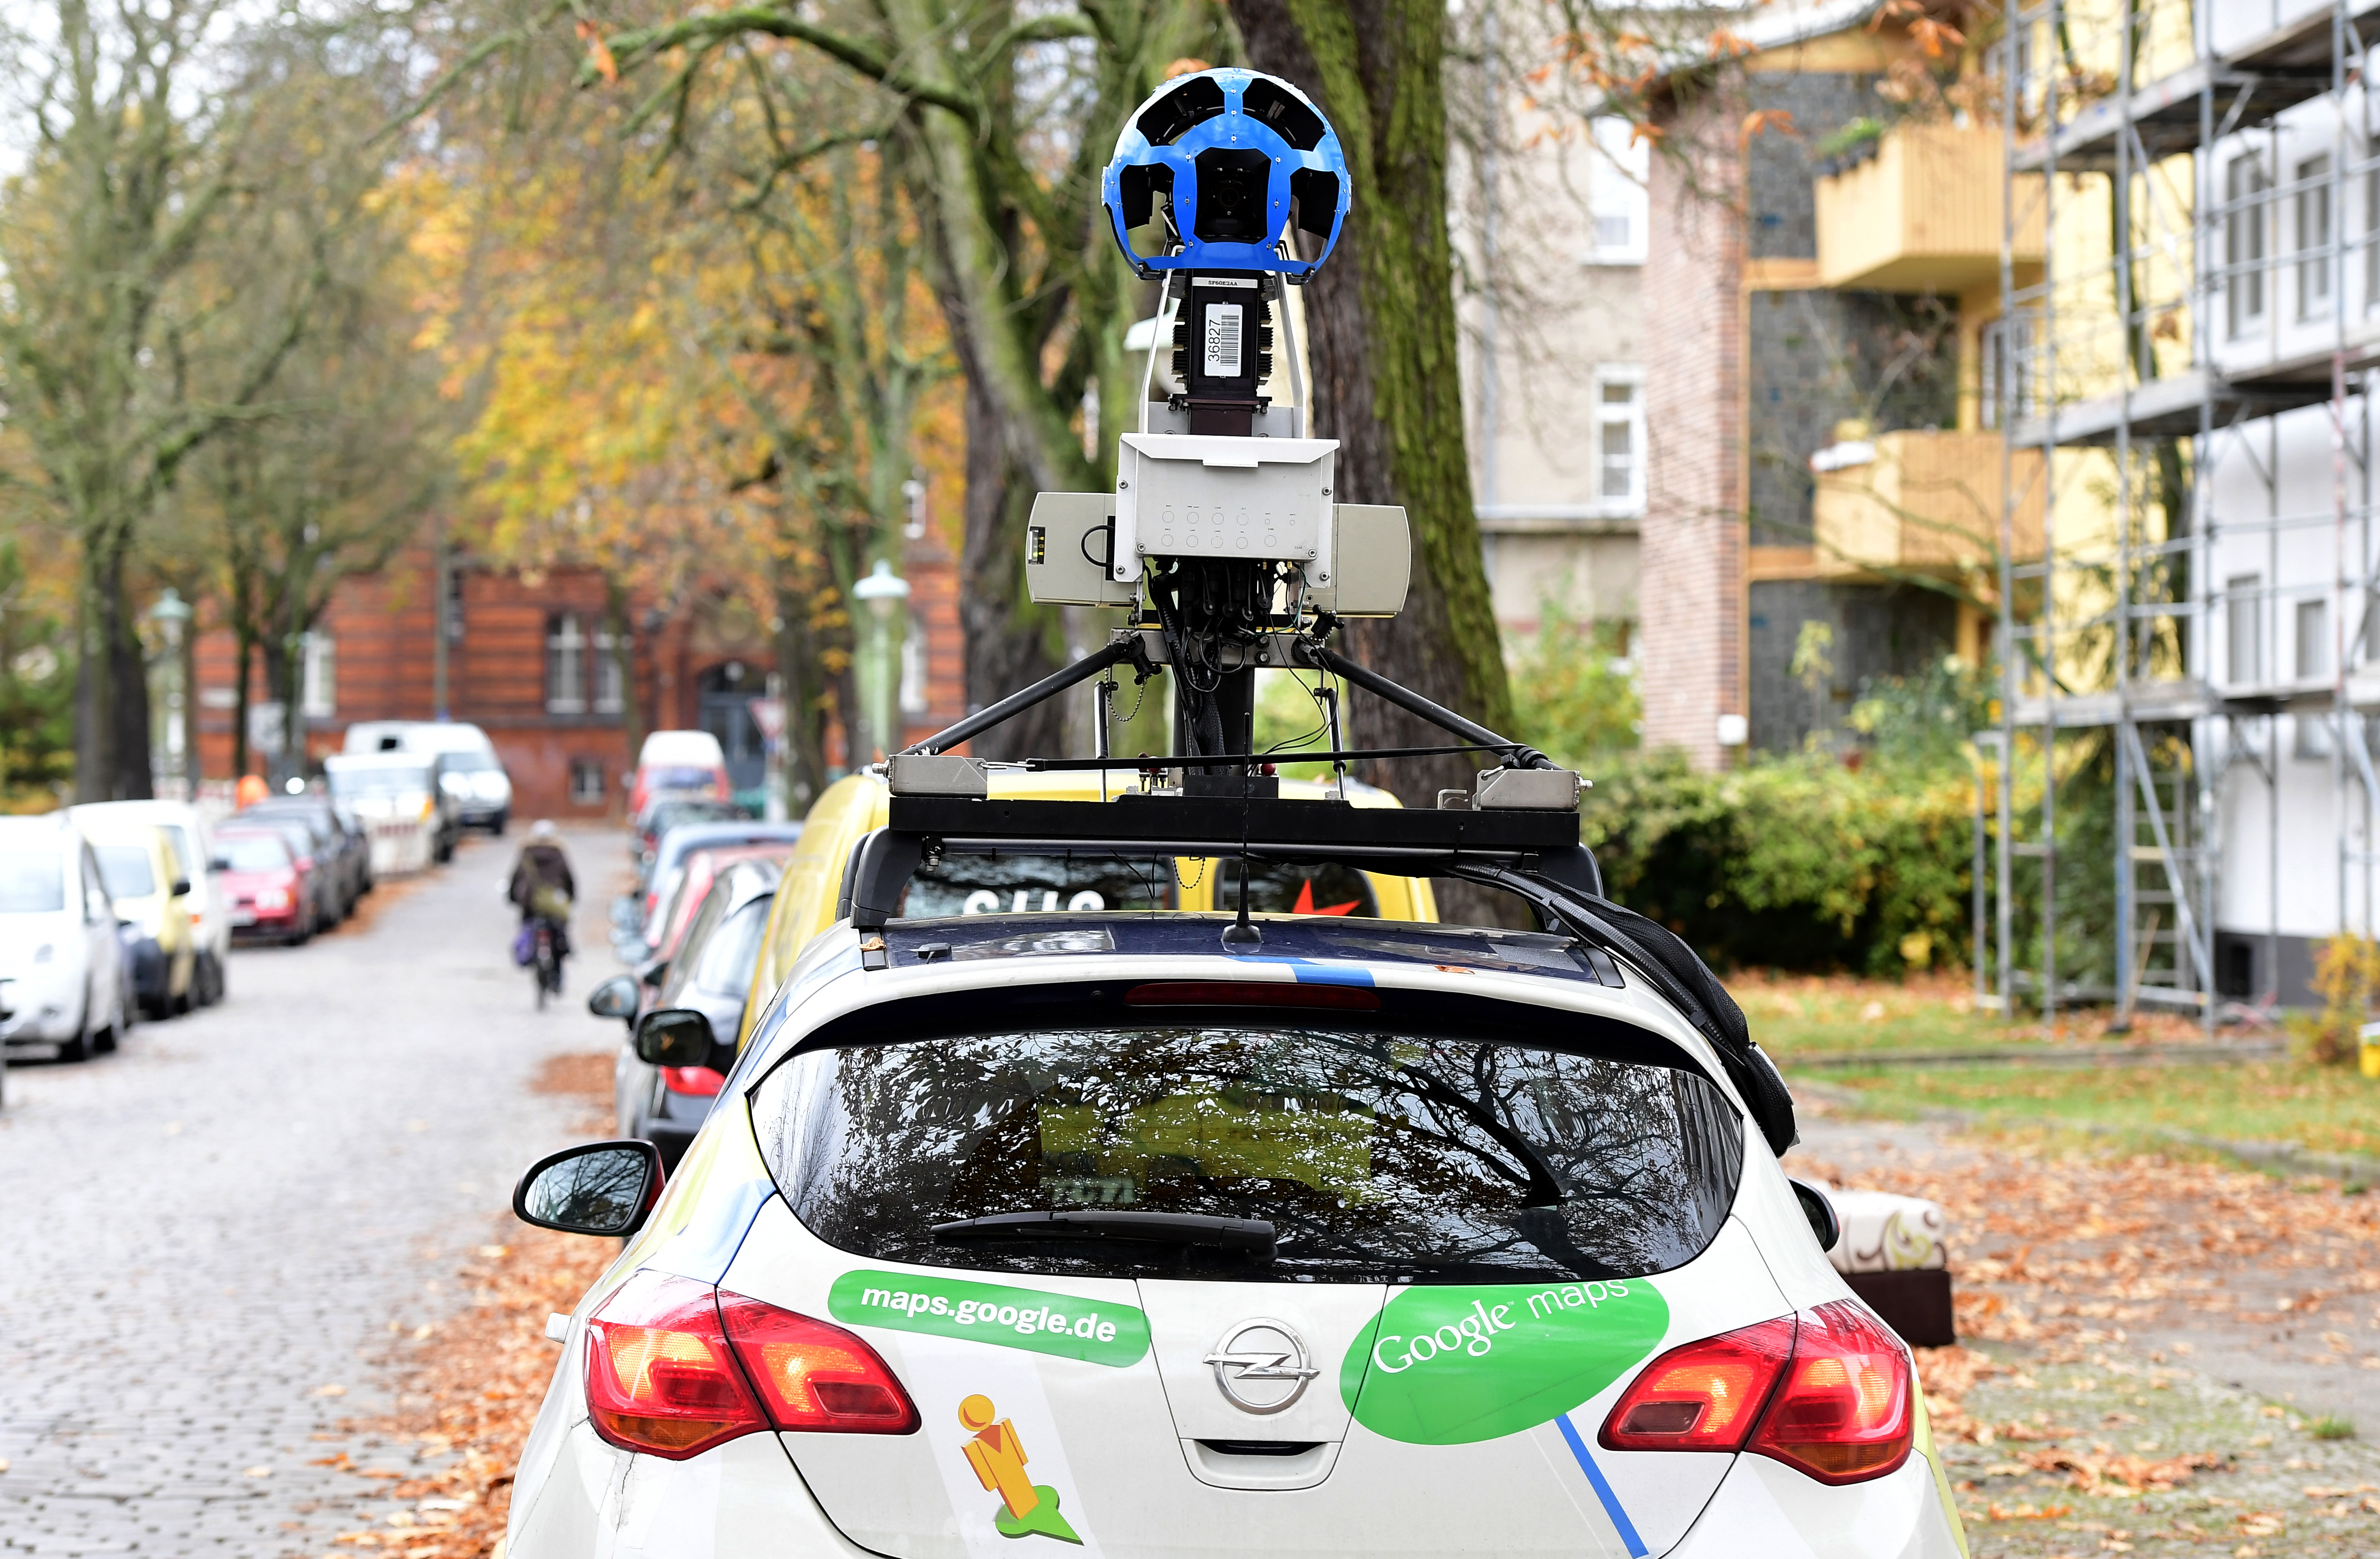 Megint Magyarországra jönnek a Google autói, hogy lefotózzák az utcákat